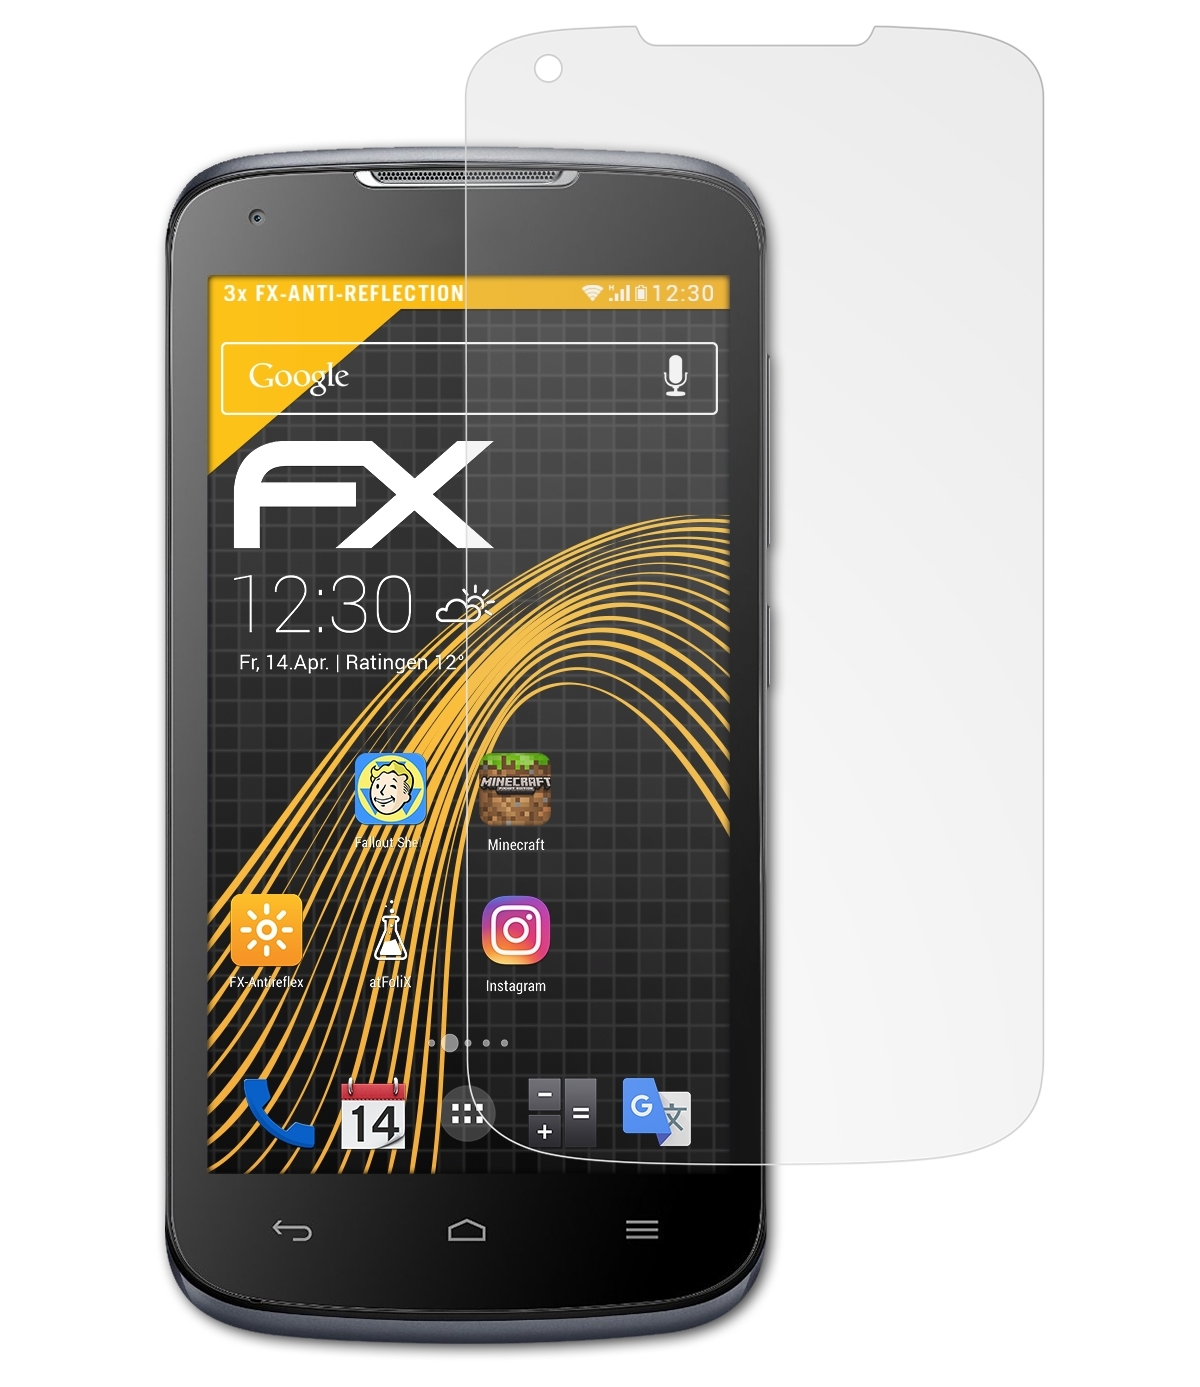 ATFOLIX 3x FX-Antireflex Displayschutz(für Huawei Y540) Ascend